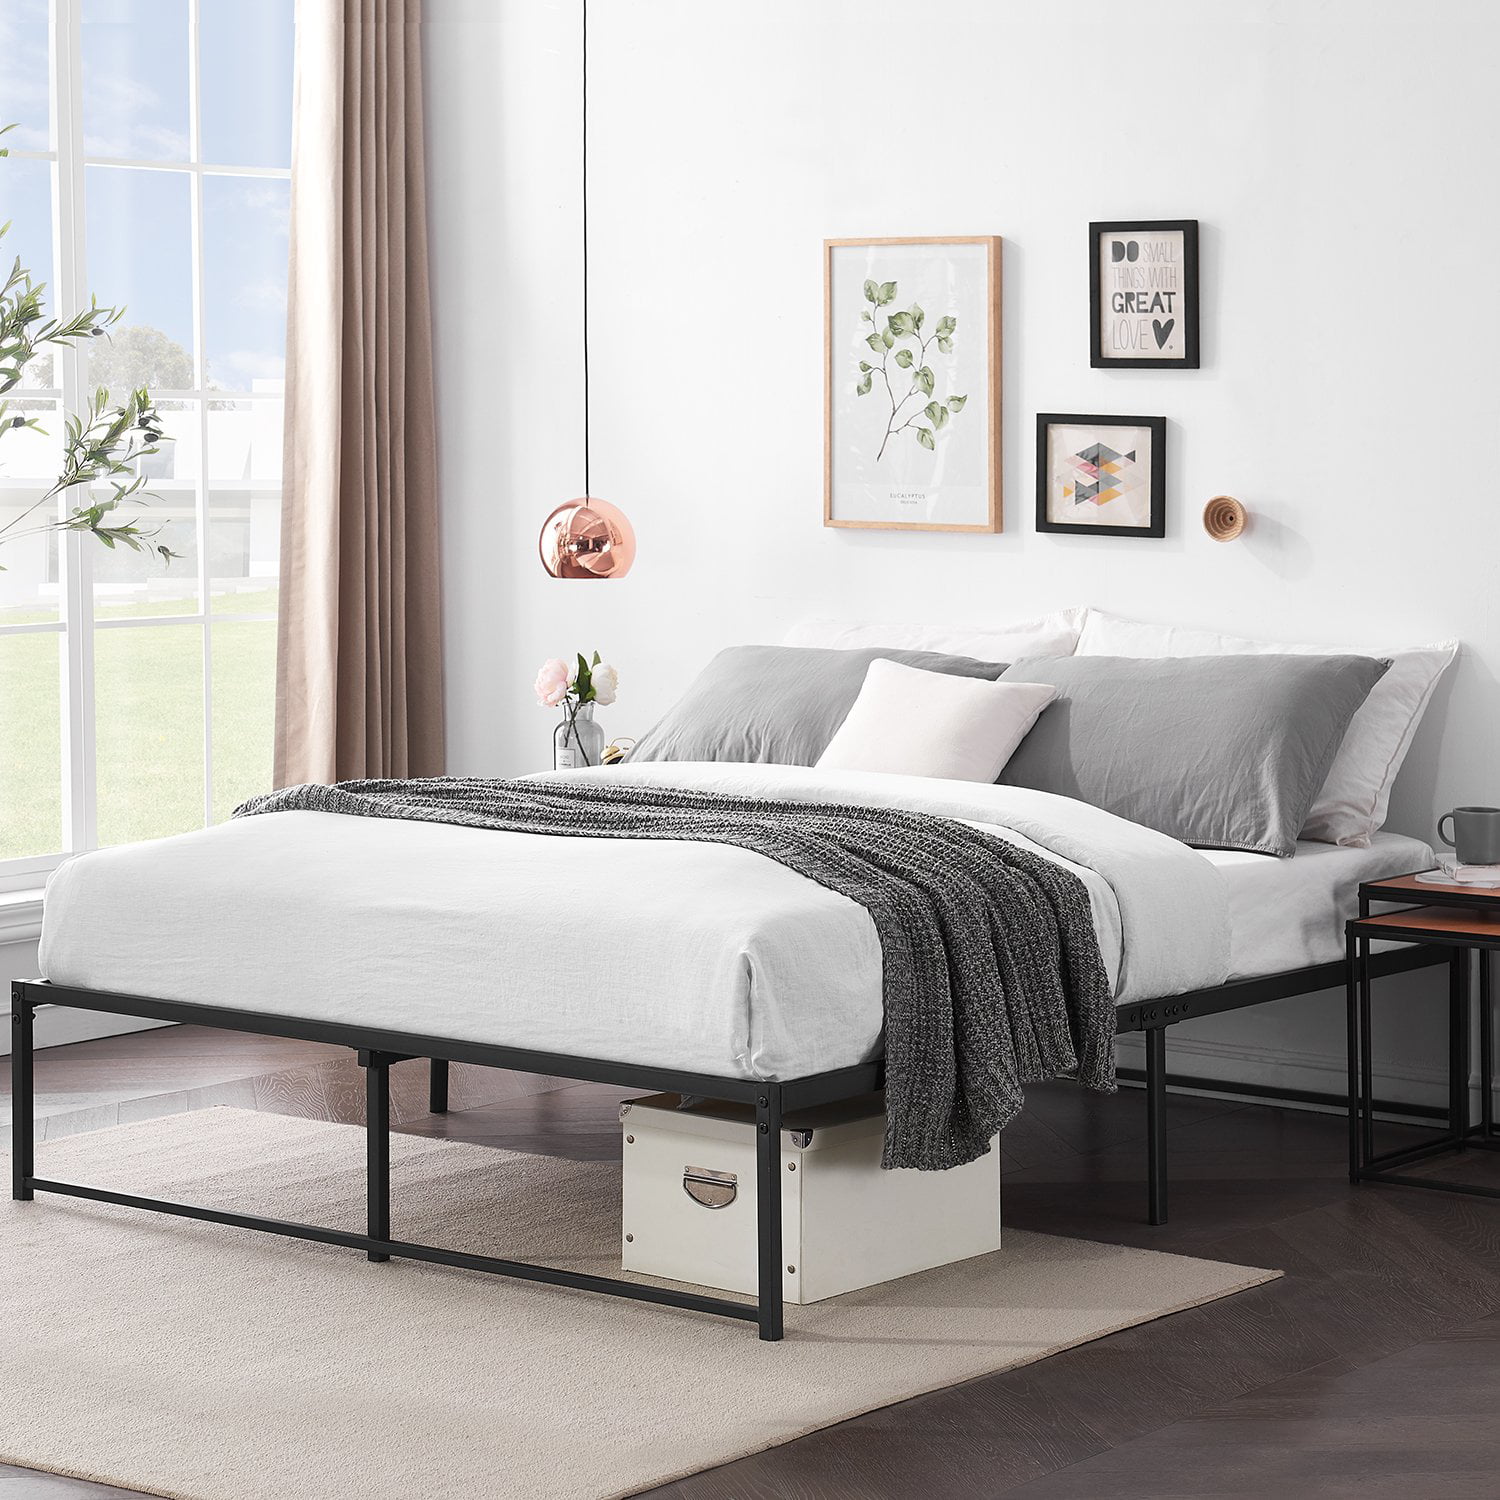 Metal Platform Bed Frame Full Size With, Upholstered Platform Bed Frame No Headboard